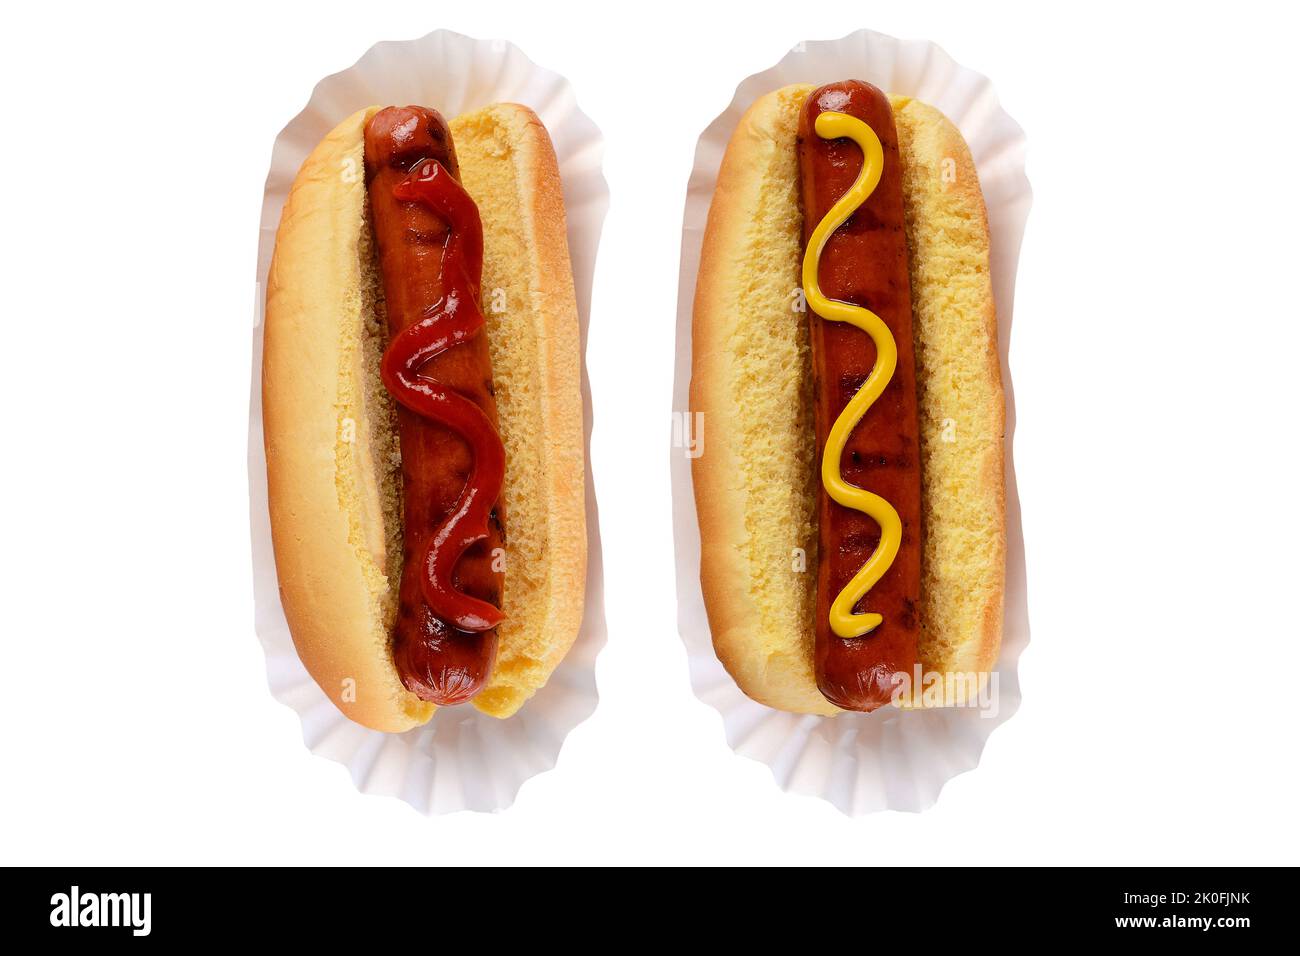 Due hot Dogs in panini uno con Ketchup e uno con Mustard un classico dibattito tra i fan di Hotdog. Foto Stock